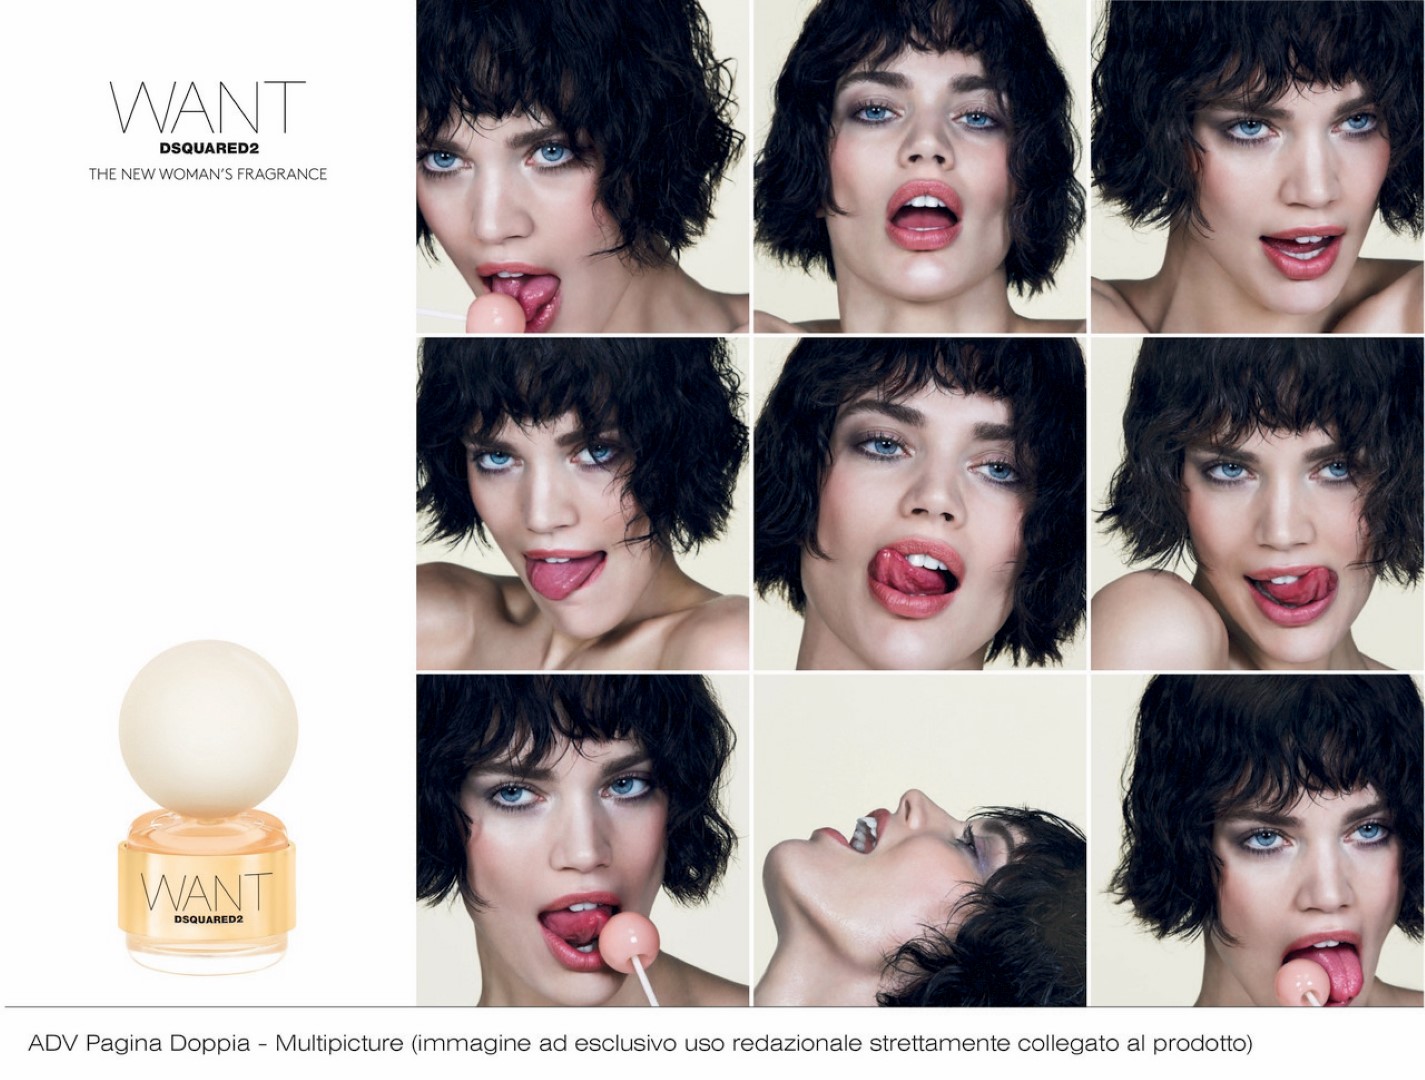 Dsquared2 Want profumo: la nuova fragranza femminile, testimonial Rianne Ten Haken, video e foto